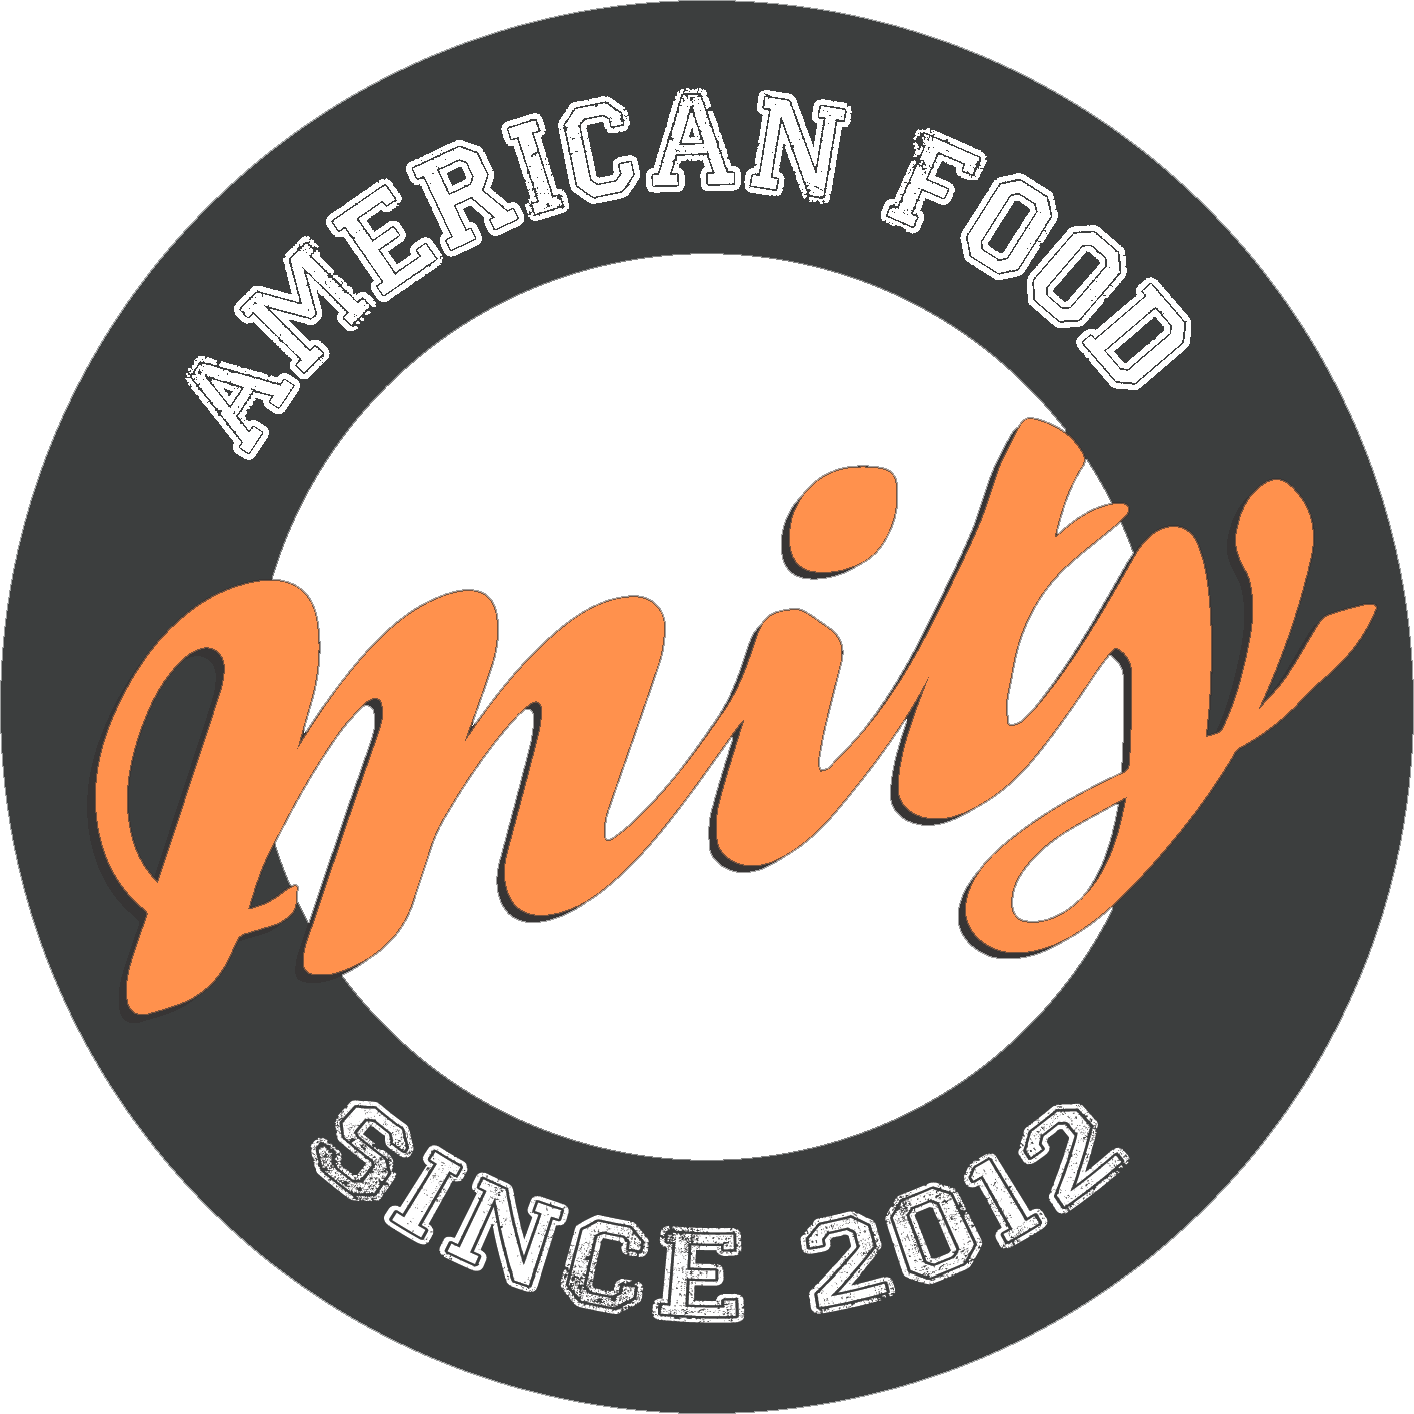 milyburger logo